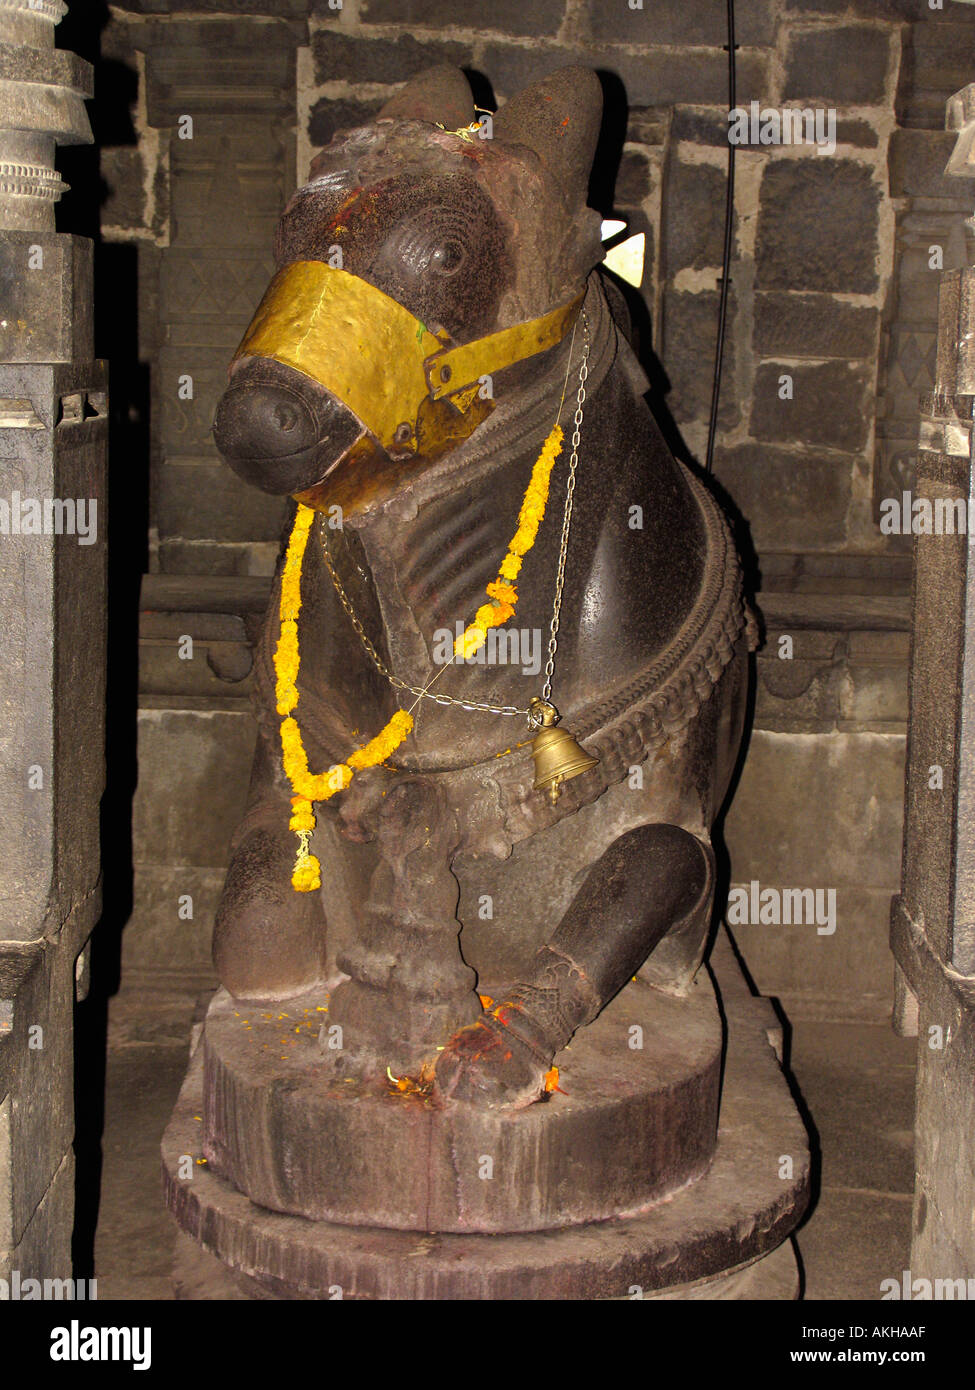 Nandi - Statut eines Stiers. Diese Statuen befinden sich normalerweise im Lord Shiva-Tempel in Indien. Stockfoto